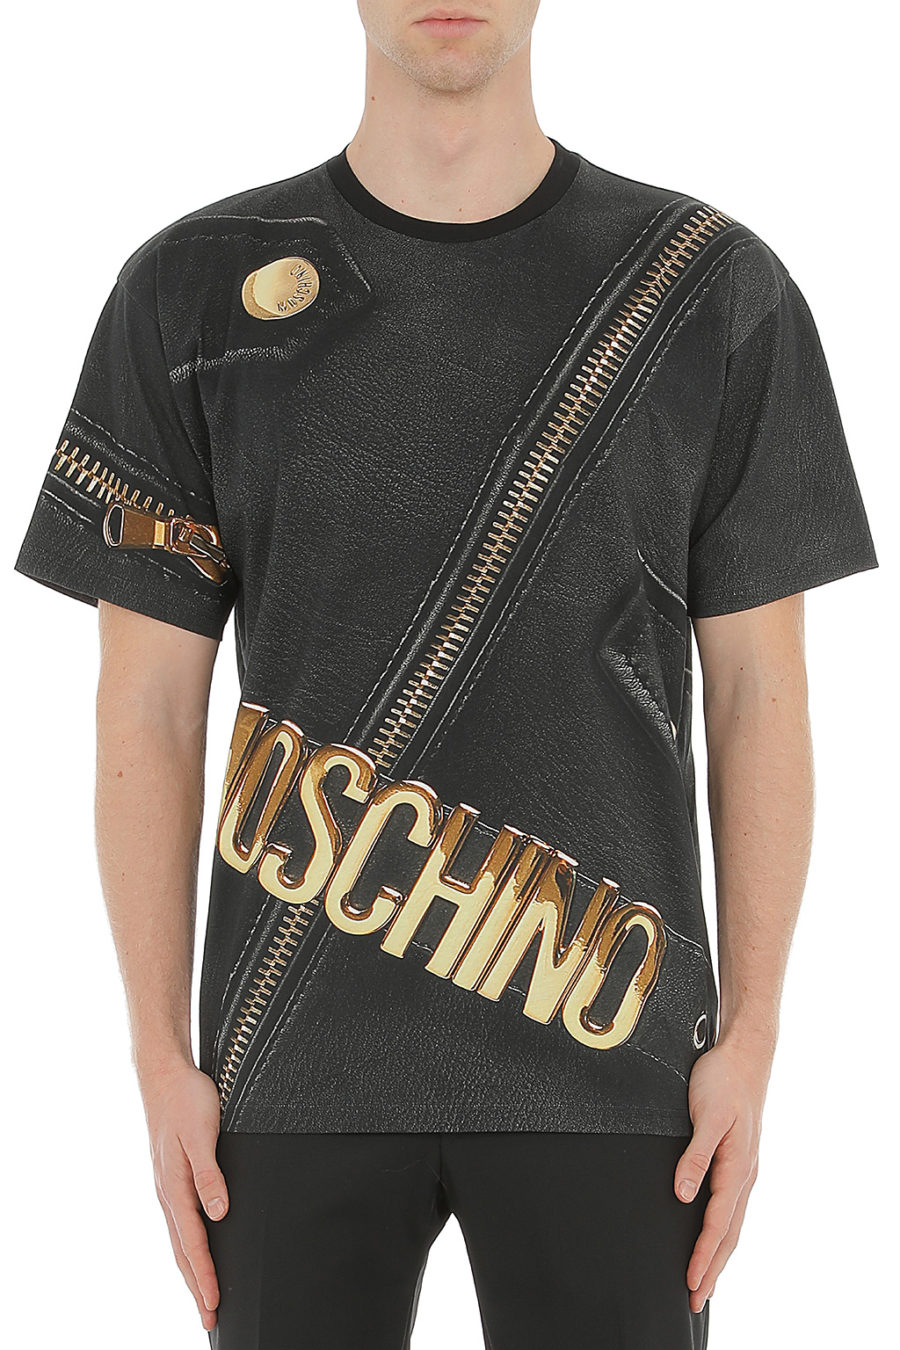 T-shirt Moschino Couture schwarz mit goldenem Reißverschluss - 0709 5240 1888